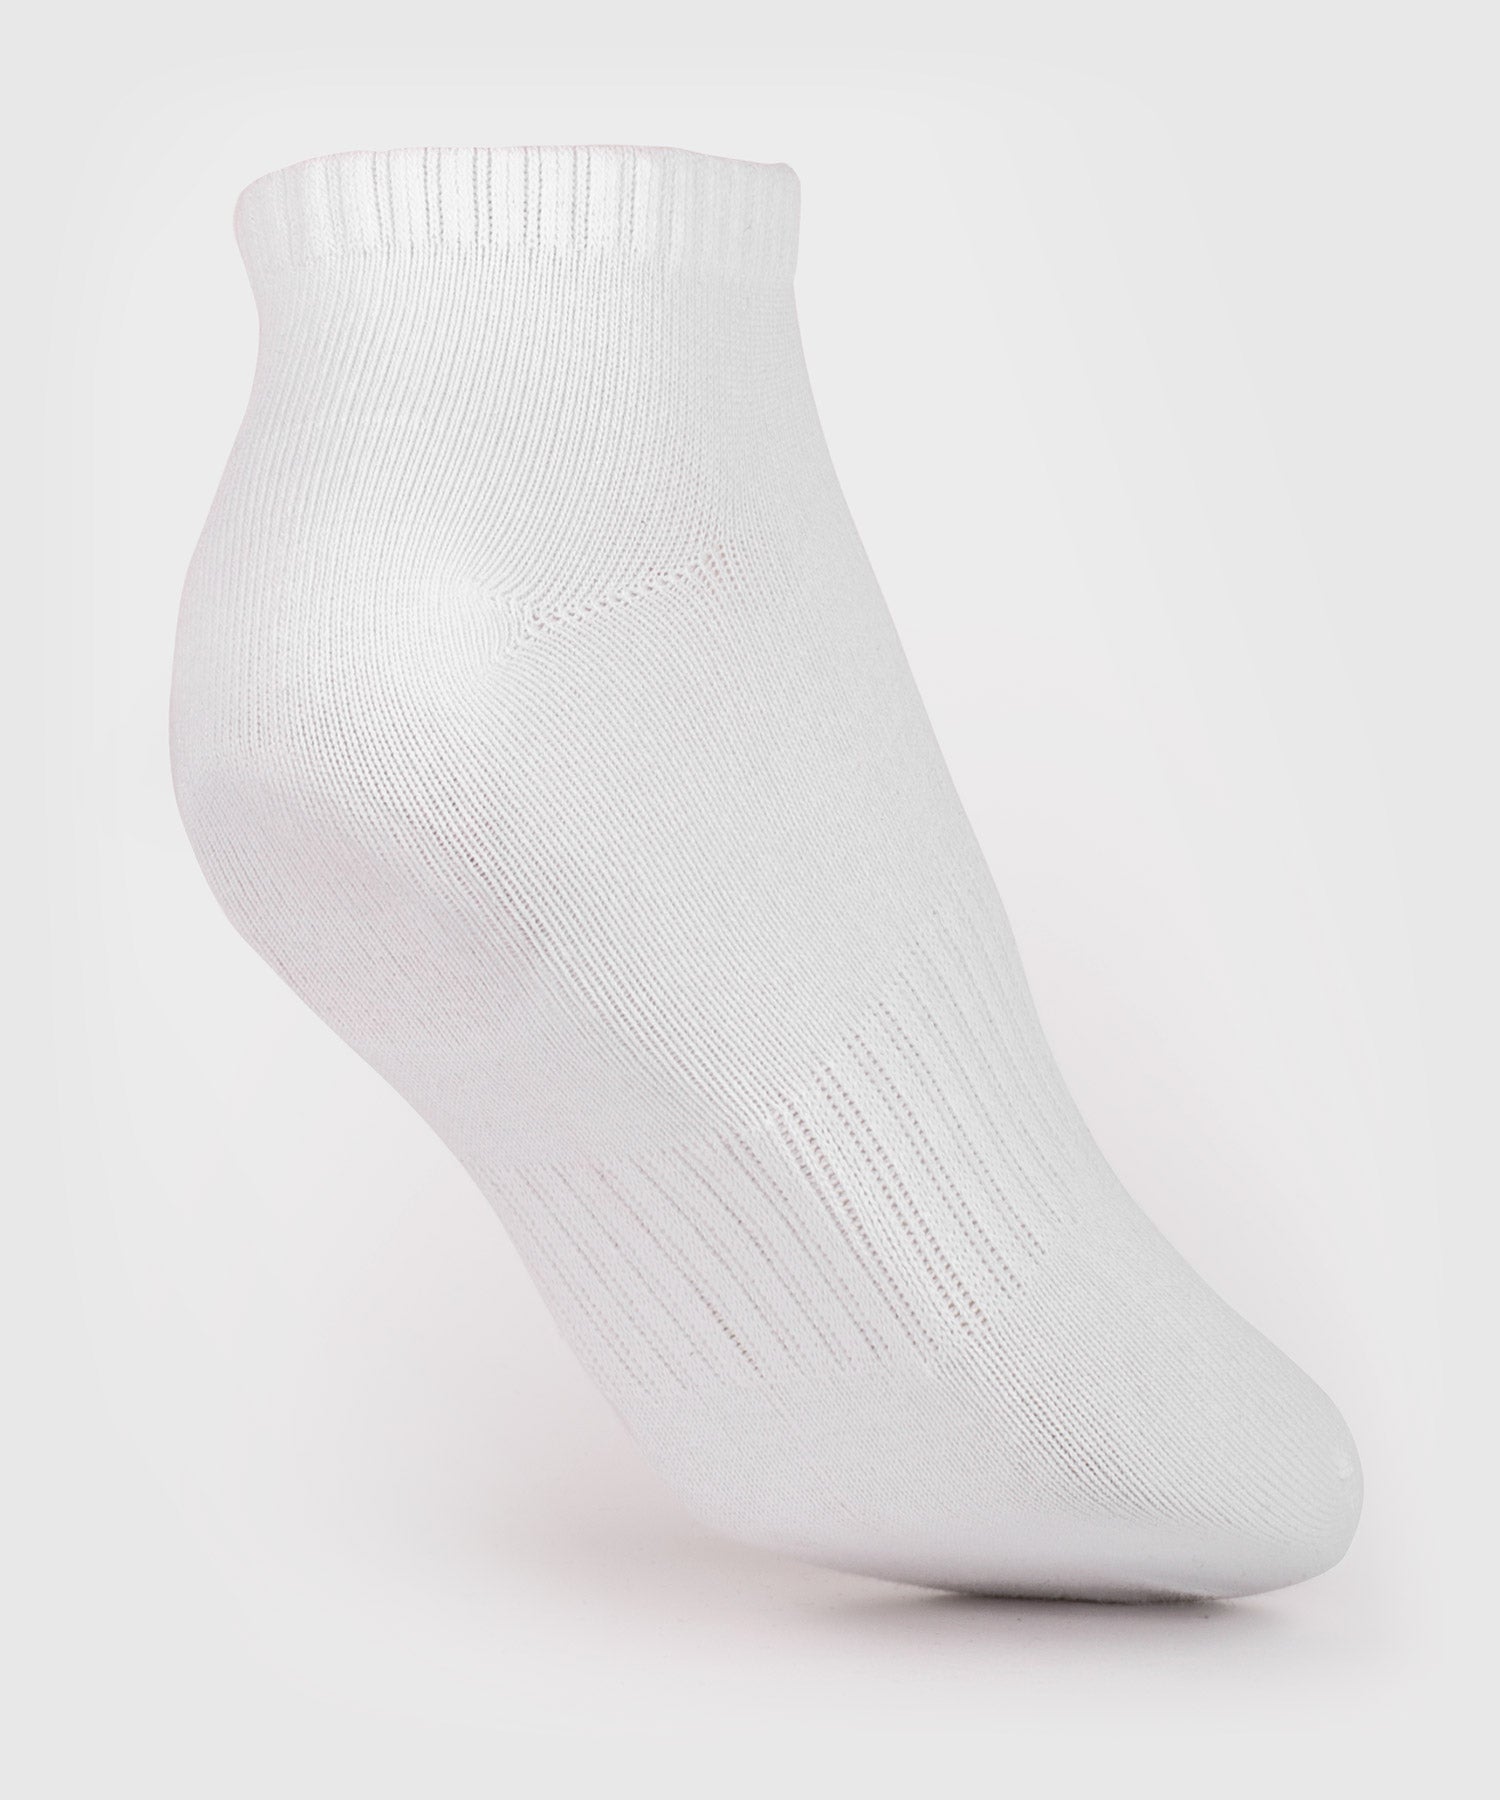 Venum Classic Footlet Sock - set of 3 - White/Black - Venum Asia